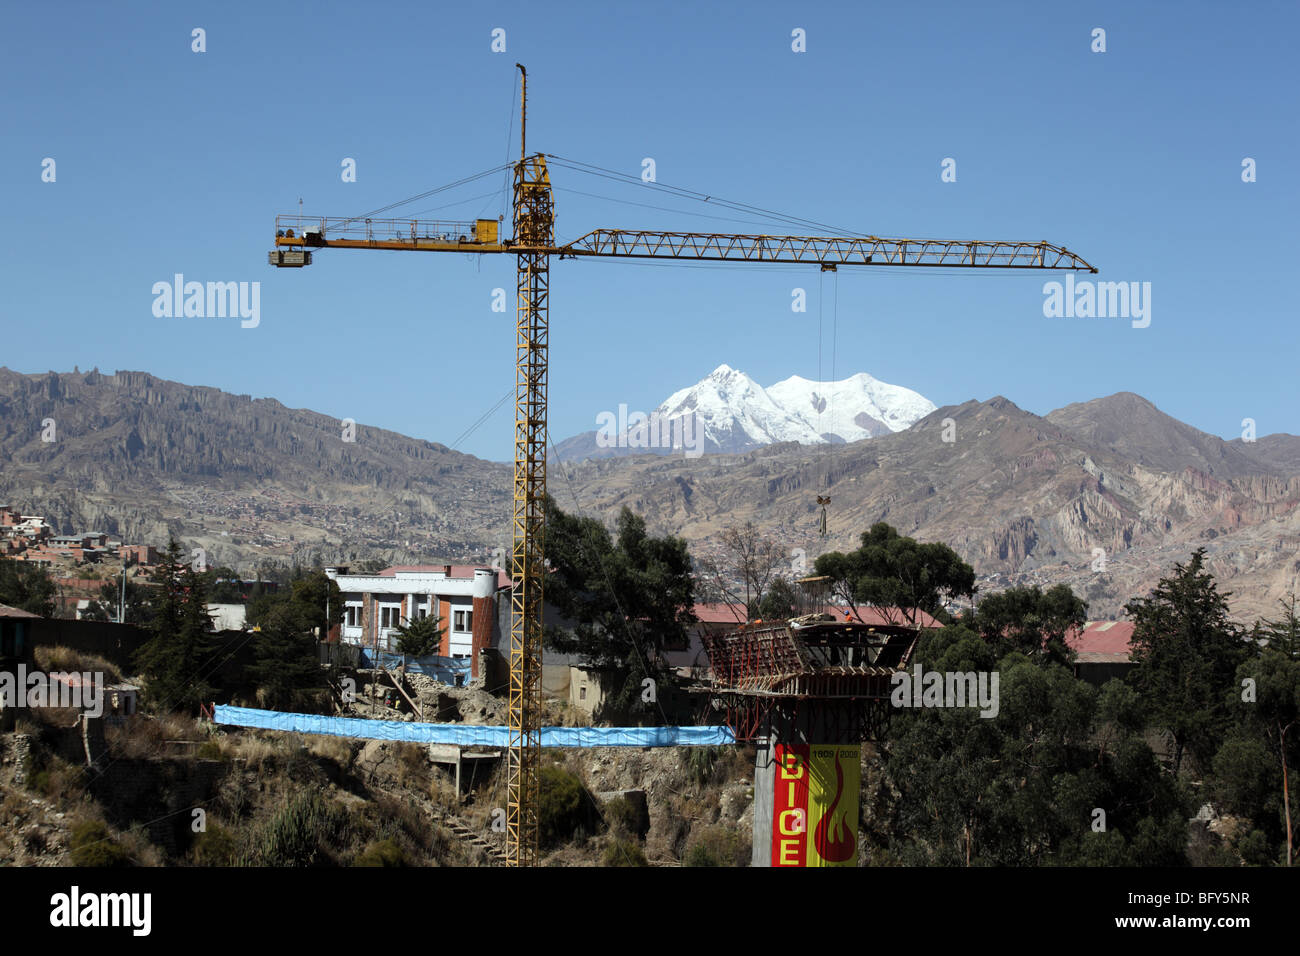 Crane on Puente de los Trillizos suspension bridge construction site, Mt Illimani in background, La Paz, Bolivia Stock Photo